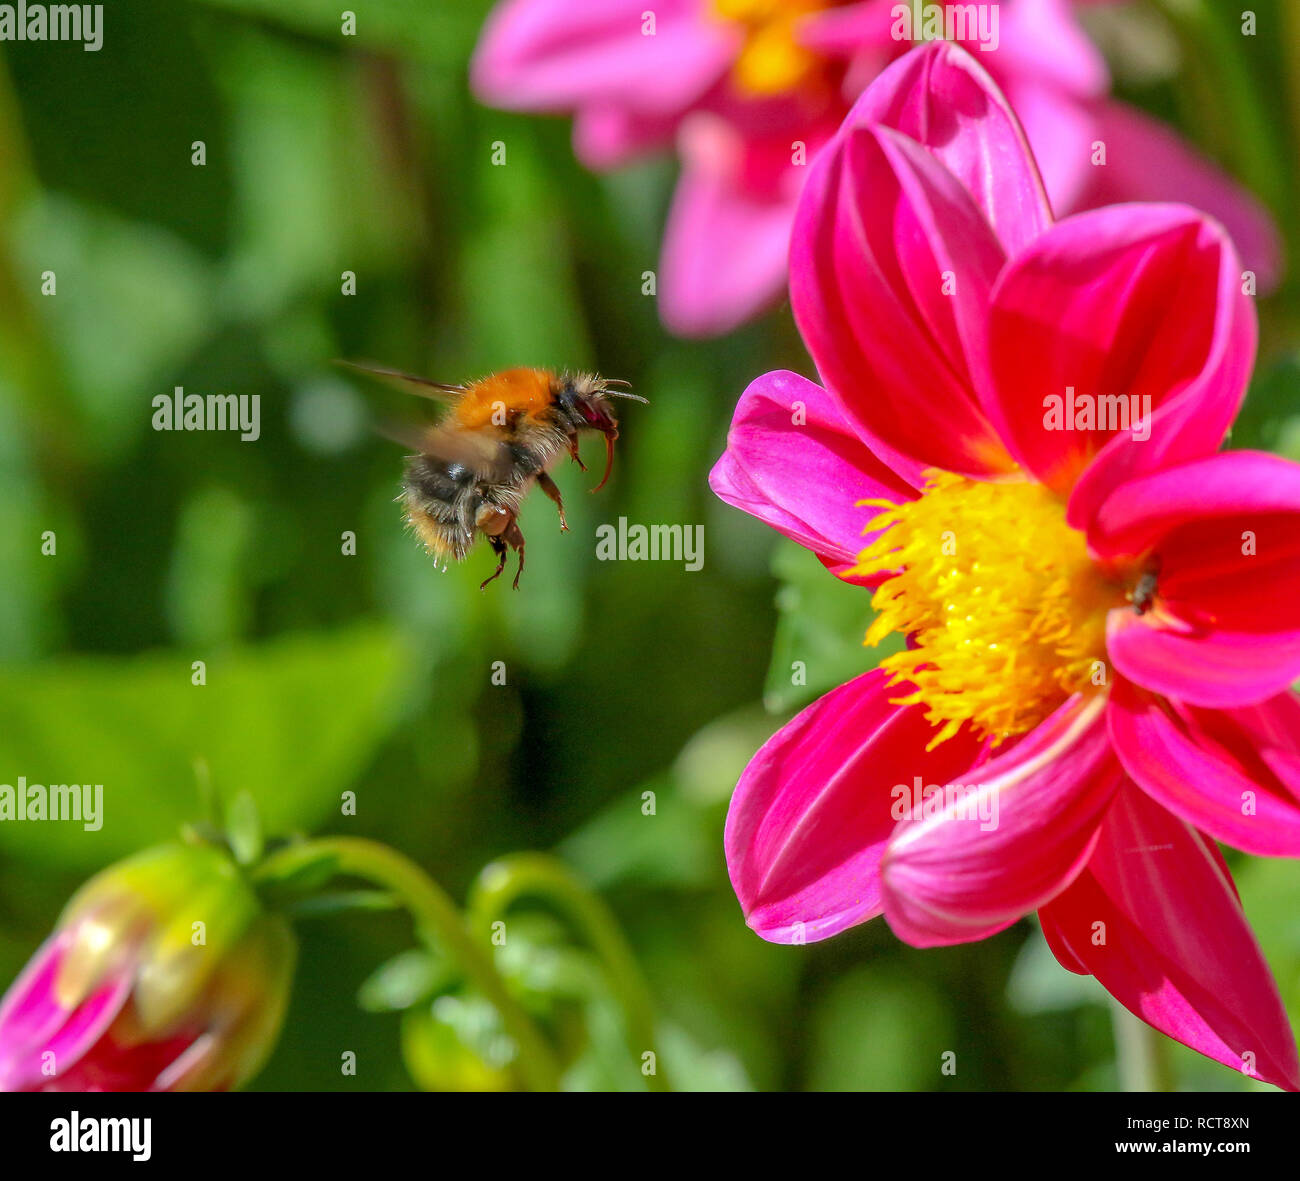 UK bee in garden flying towards flower head. Stock Photo